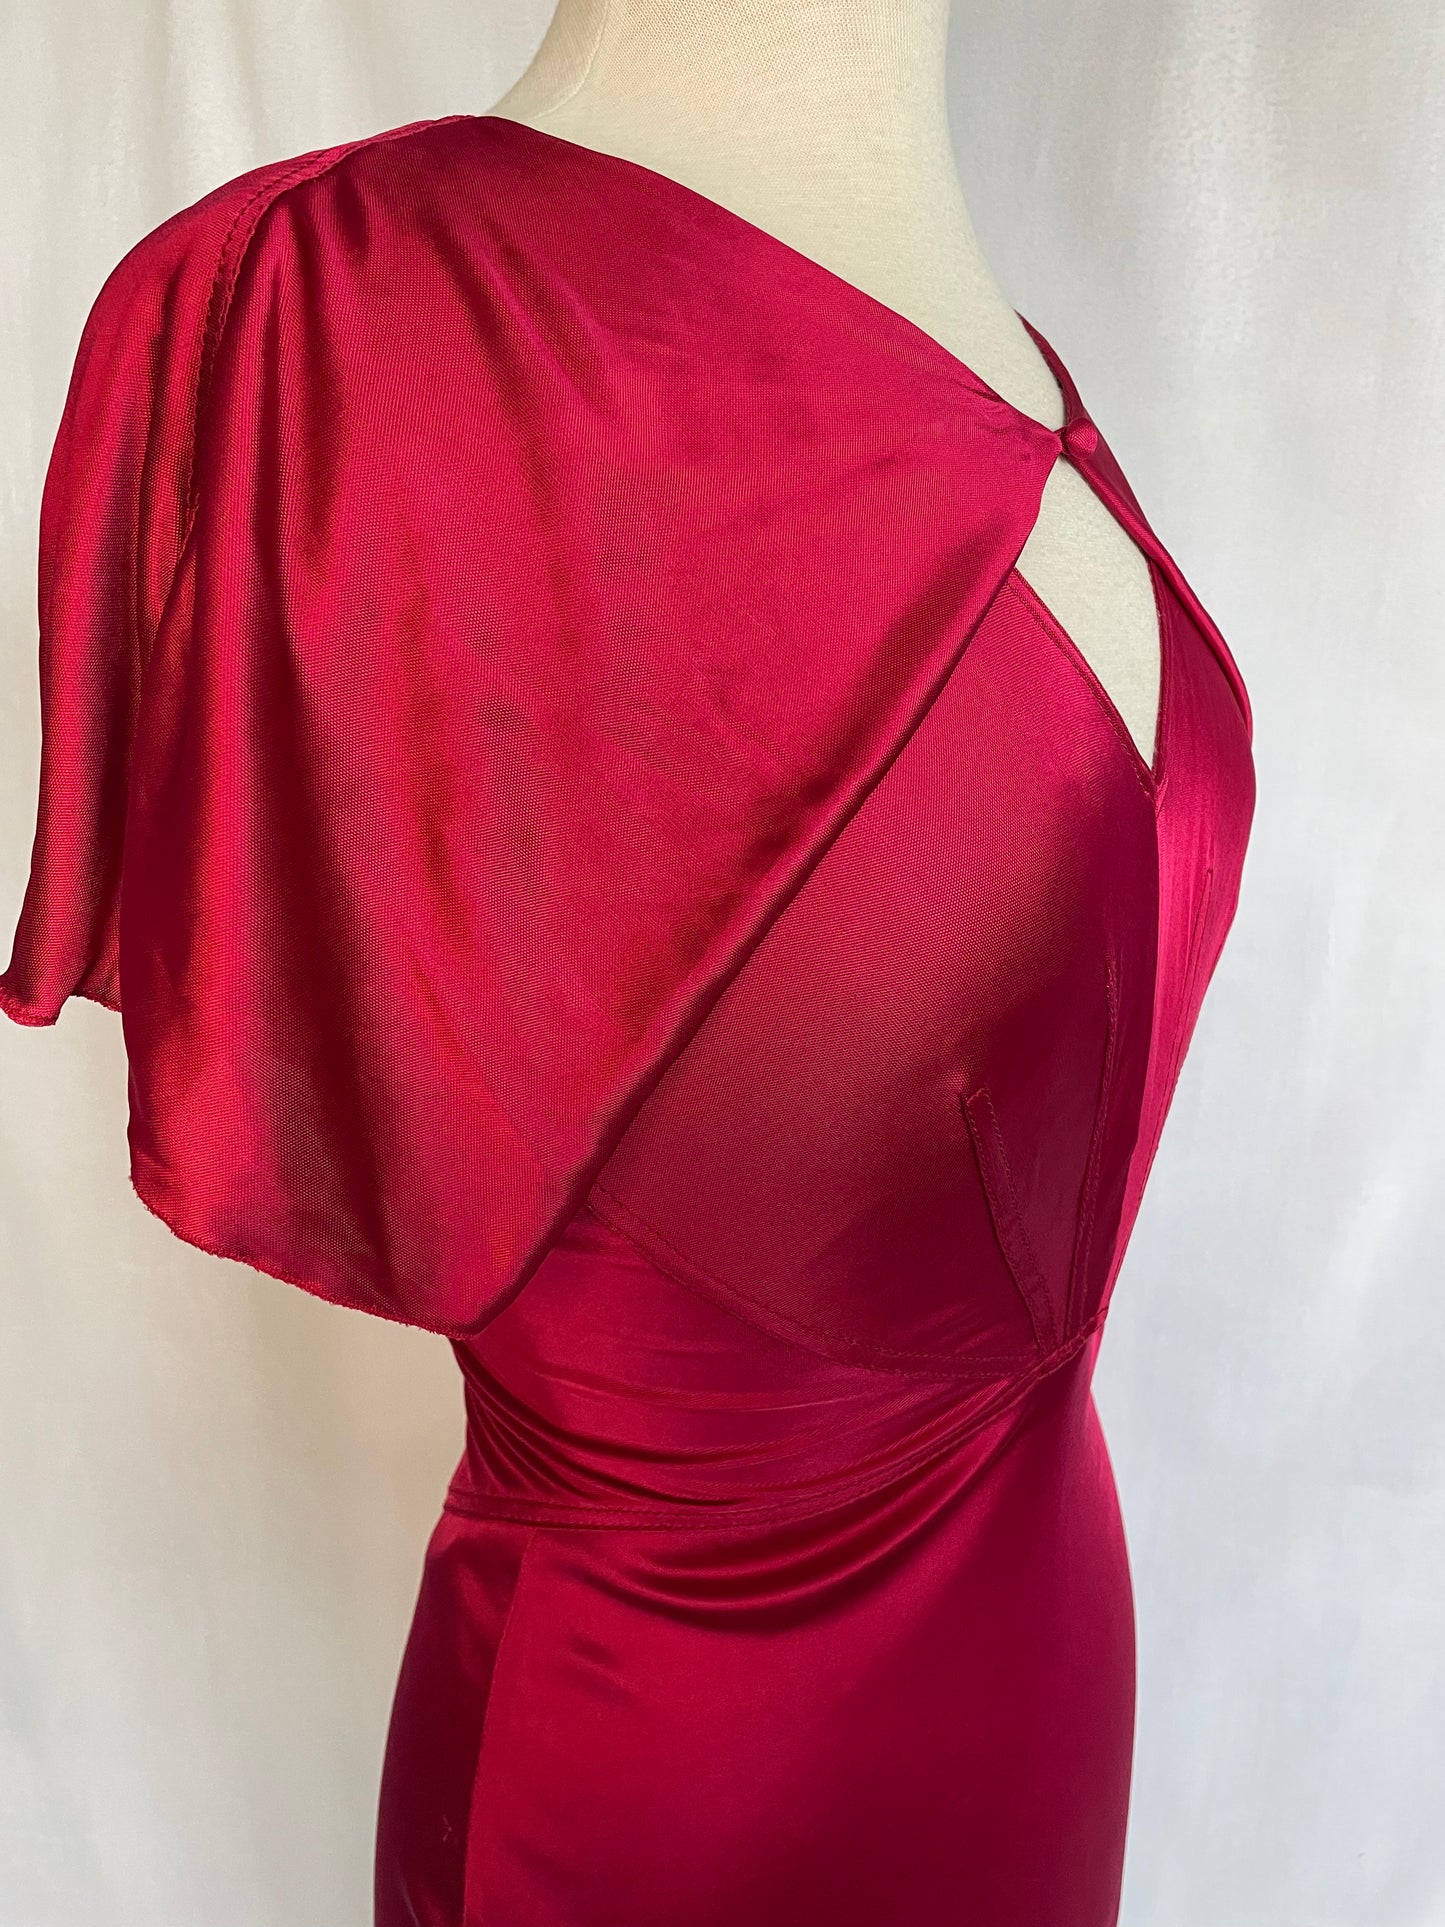 Glamorous Vintage Art Deco Zac Posen Gown